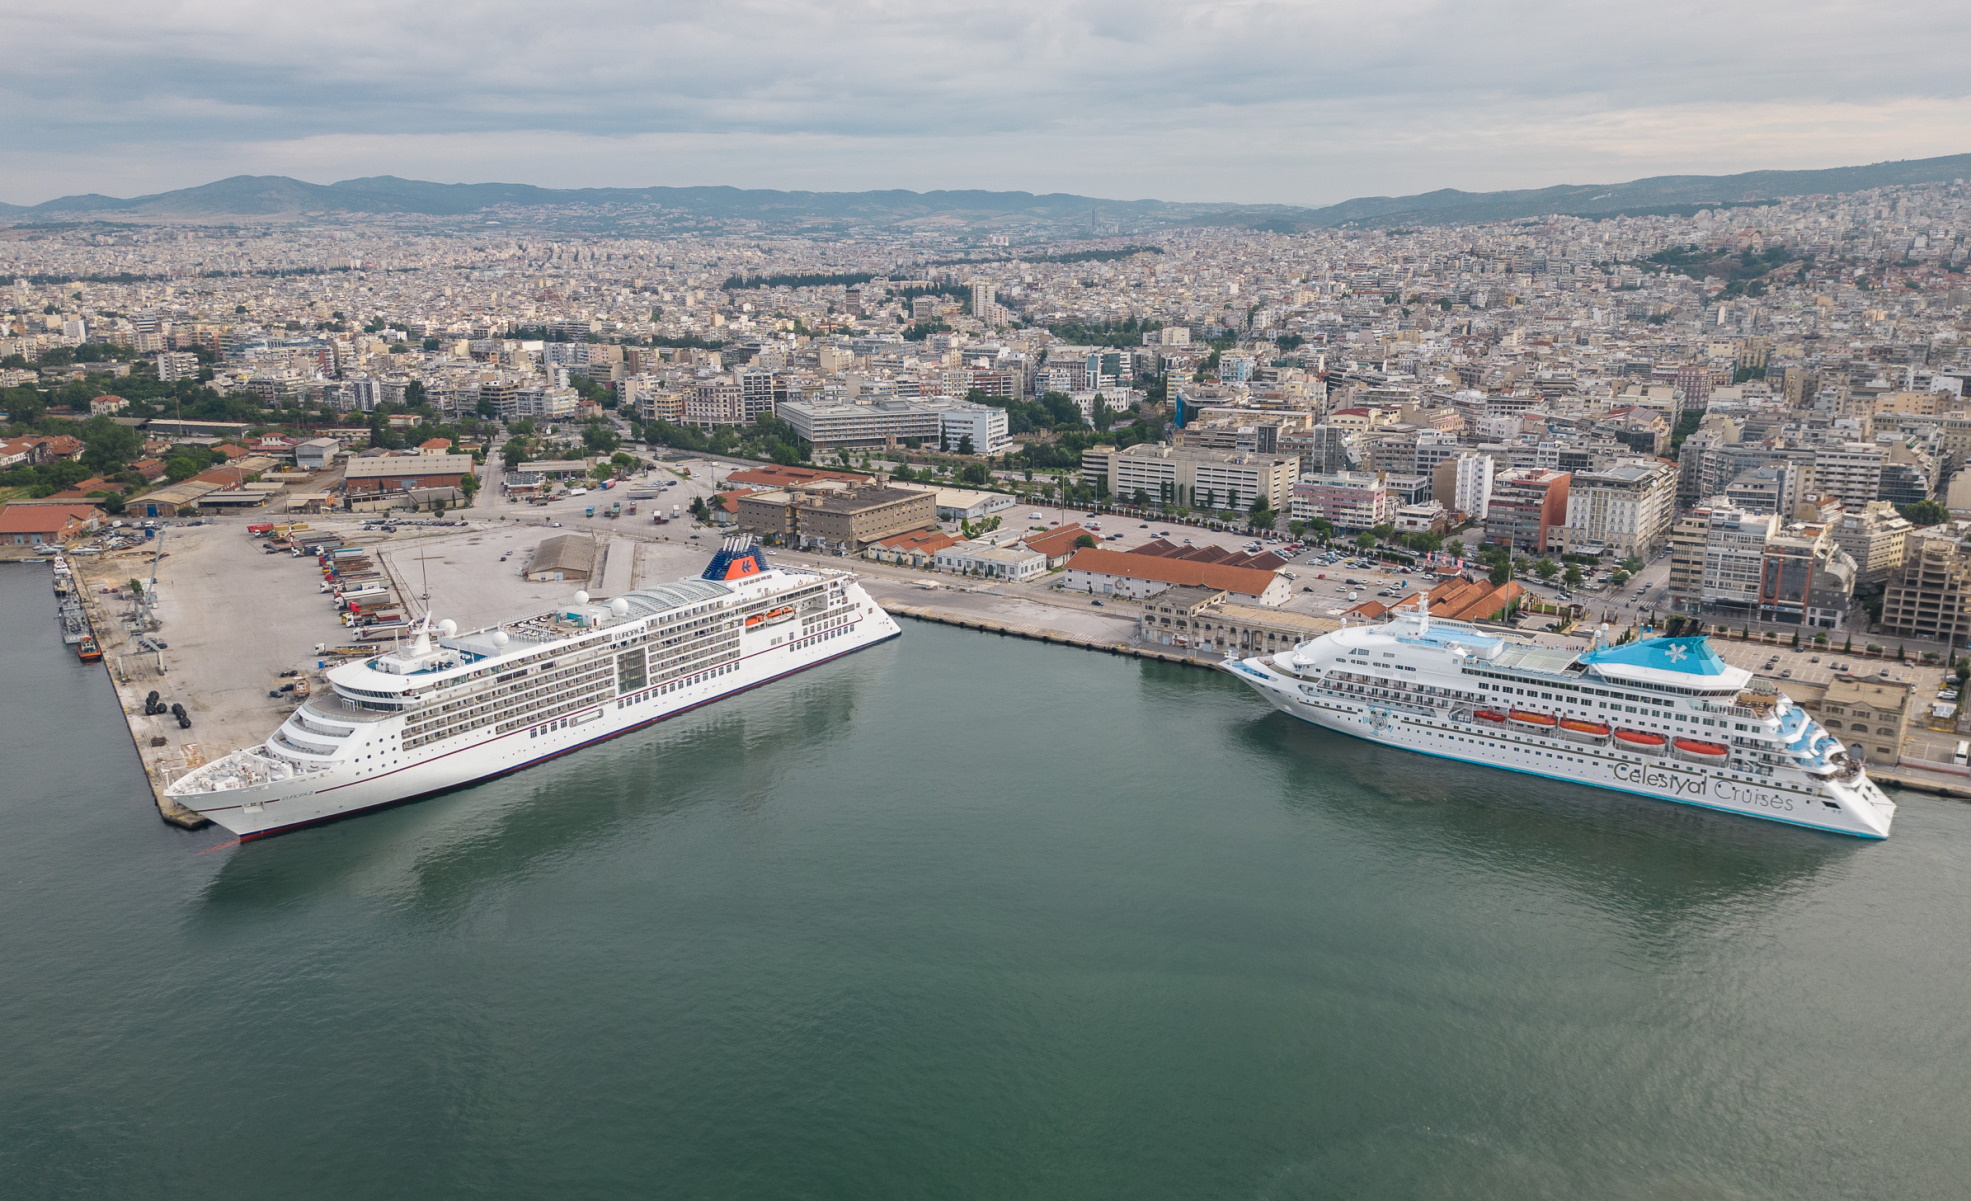 Λιμάνι Θεσσαλονίκης: Υποδέχτηκε δύο κρουαζιερόπλοια ταυτόχρονα για πρώτη φορά